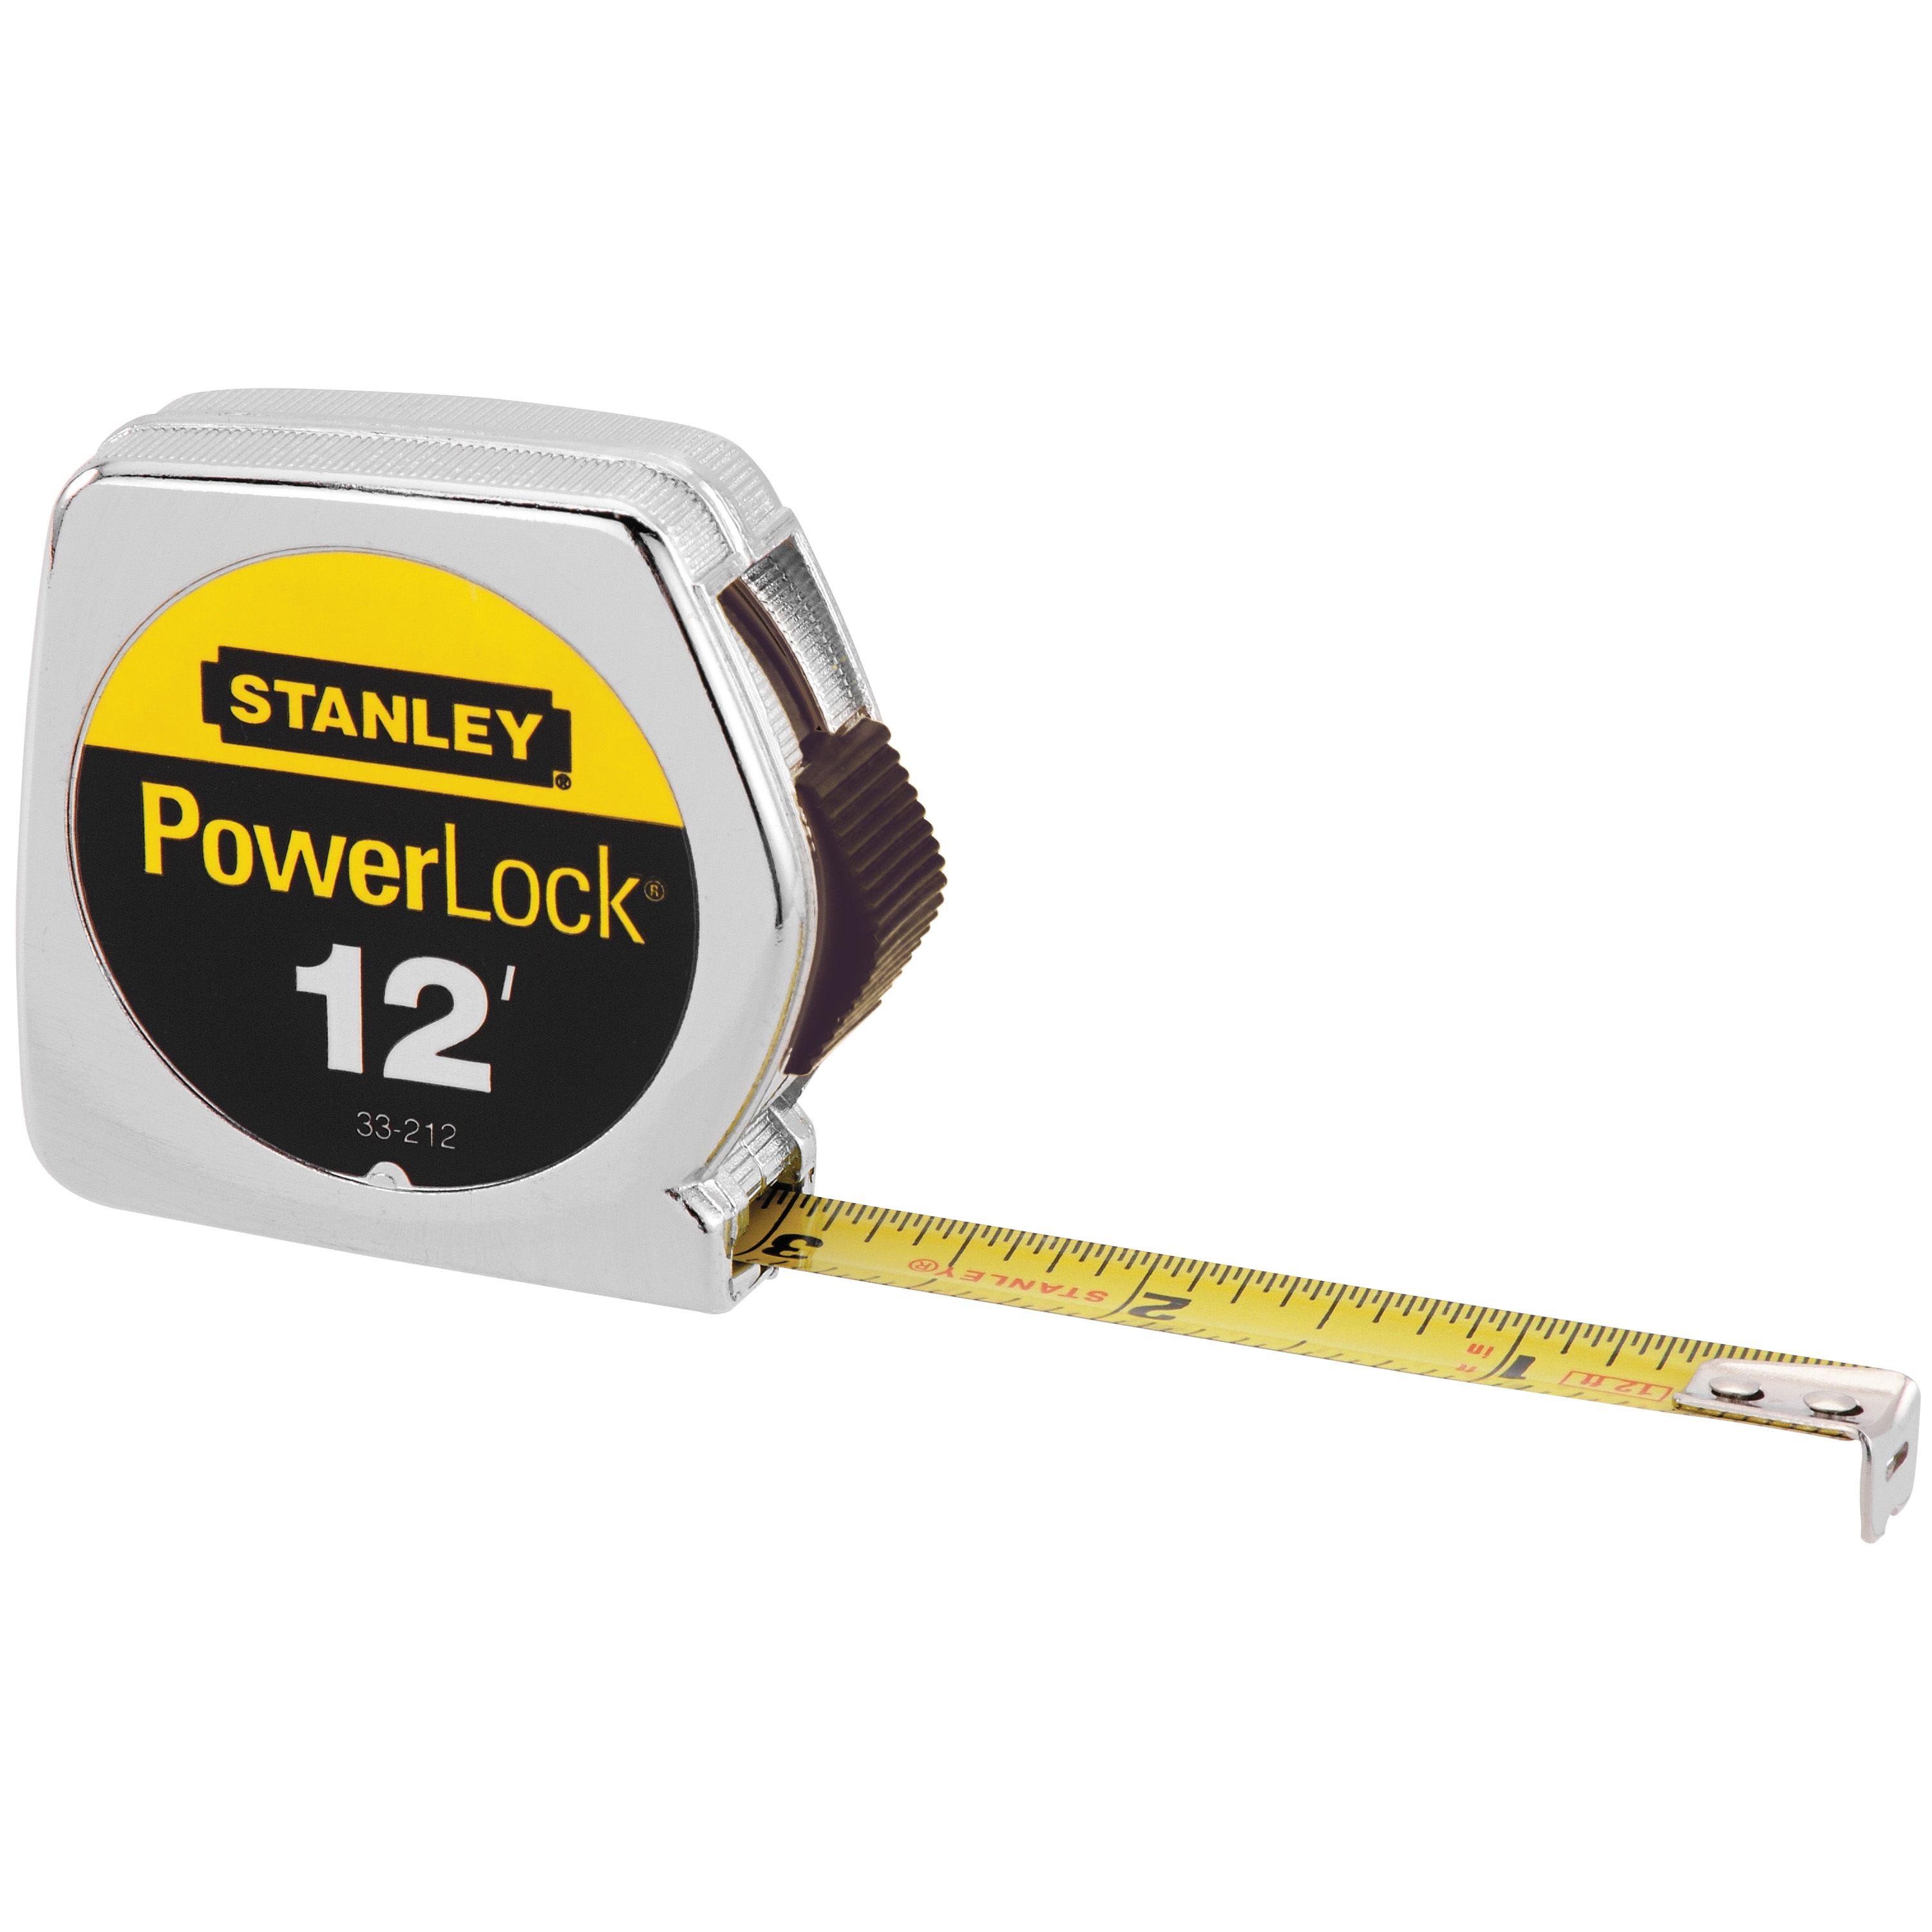 Stanley Tools - 12 ft PowerLock Tape Measure - 33-212